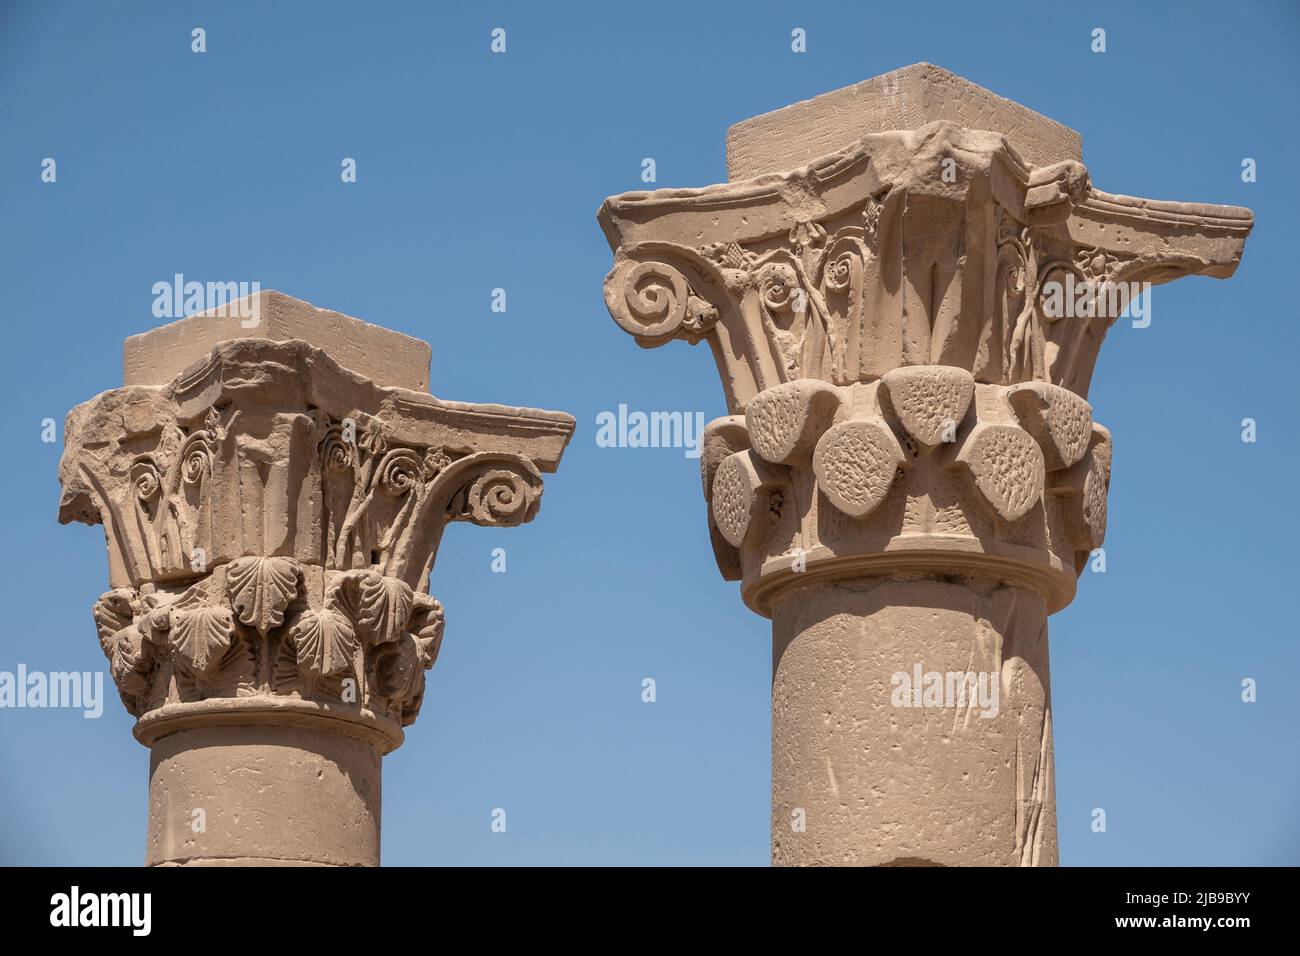 Capitales de la cour extérieure au Temple, près de Qena Bague romaine t52, l'Égypte Banque D'Images